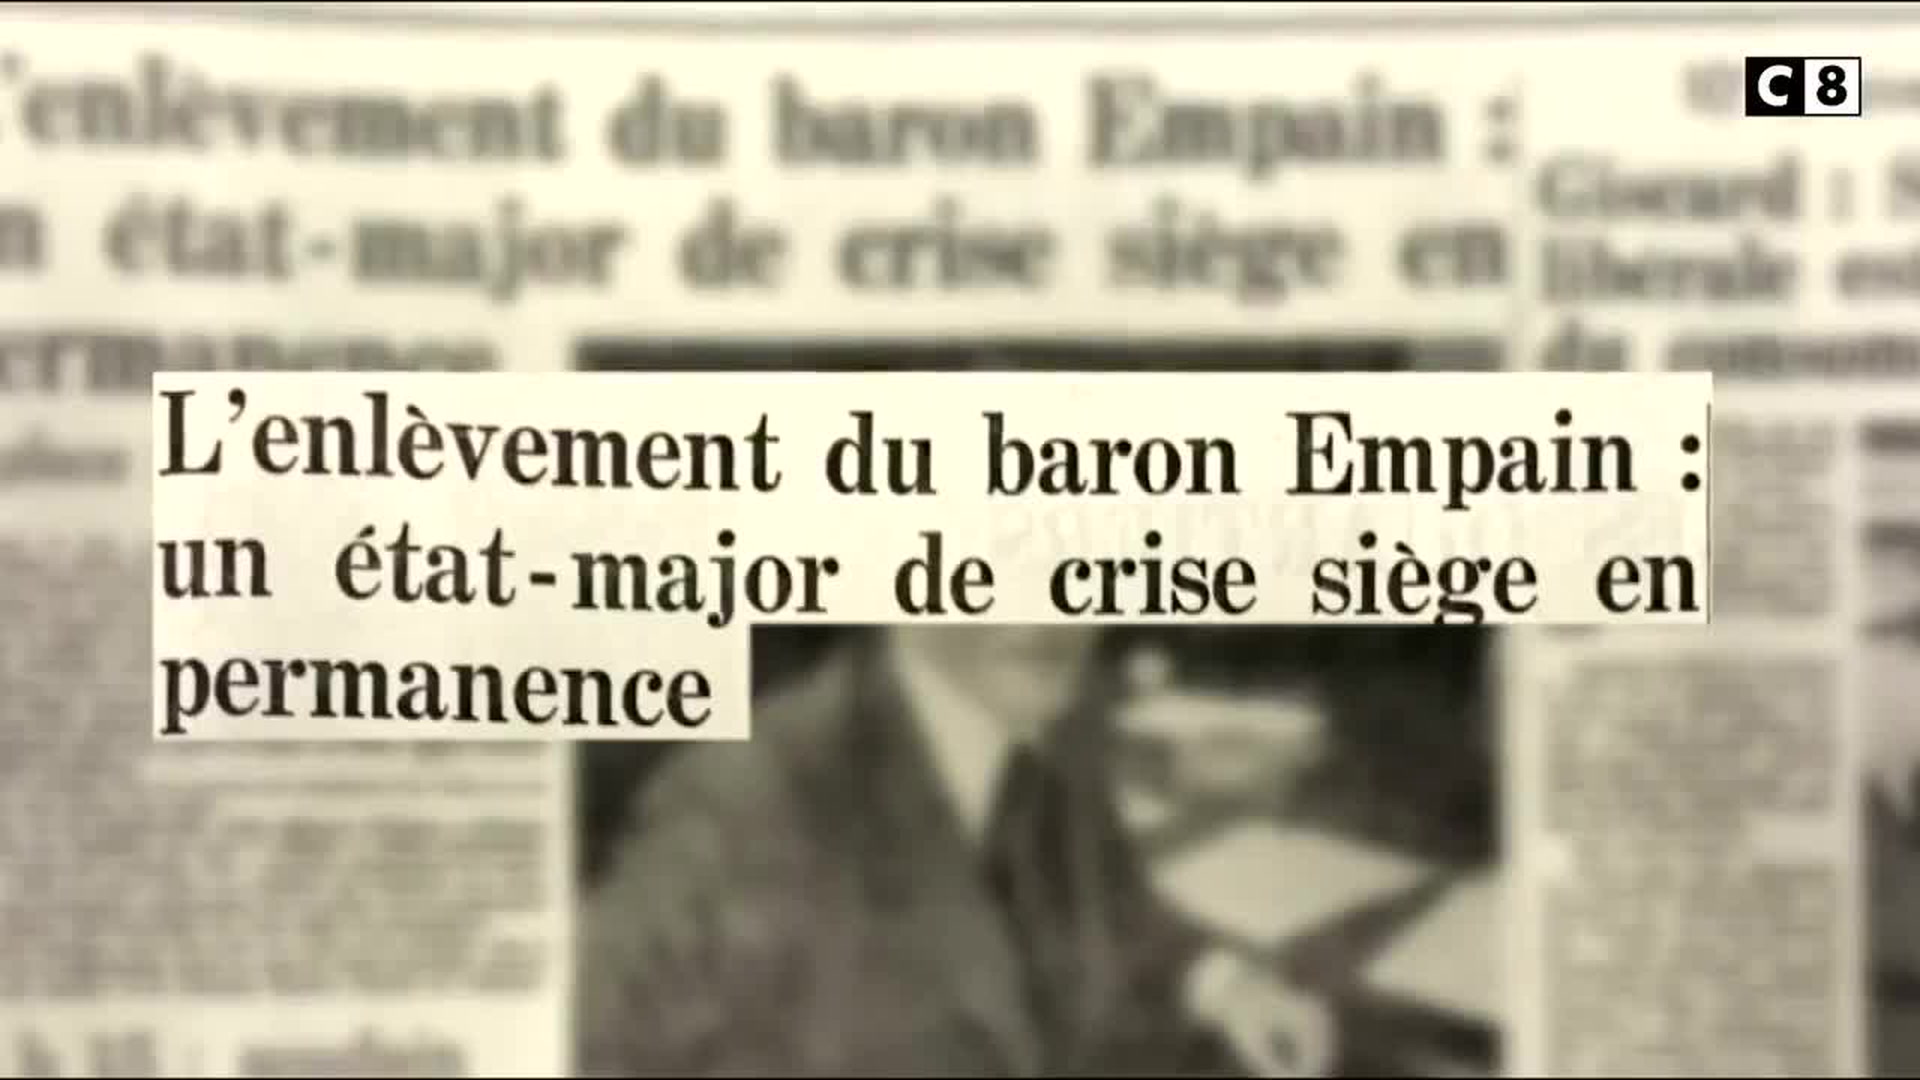 Enlèvements : L'affaire du baron Empain : deux mois sans voir le jour